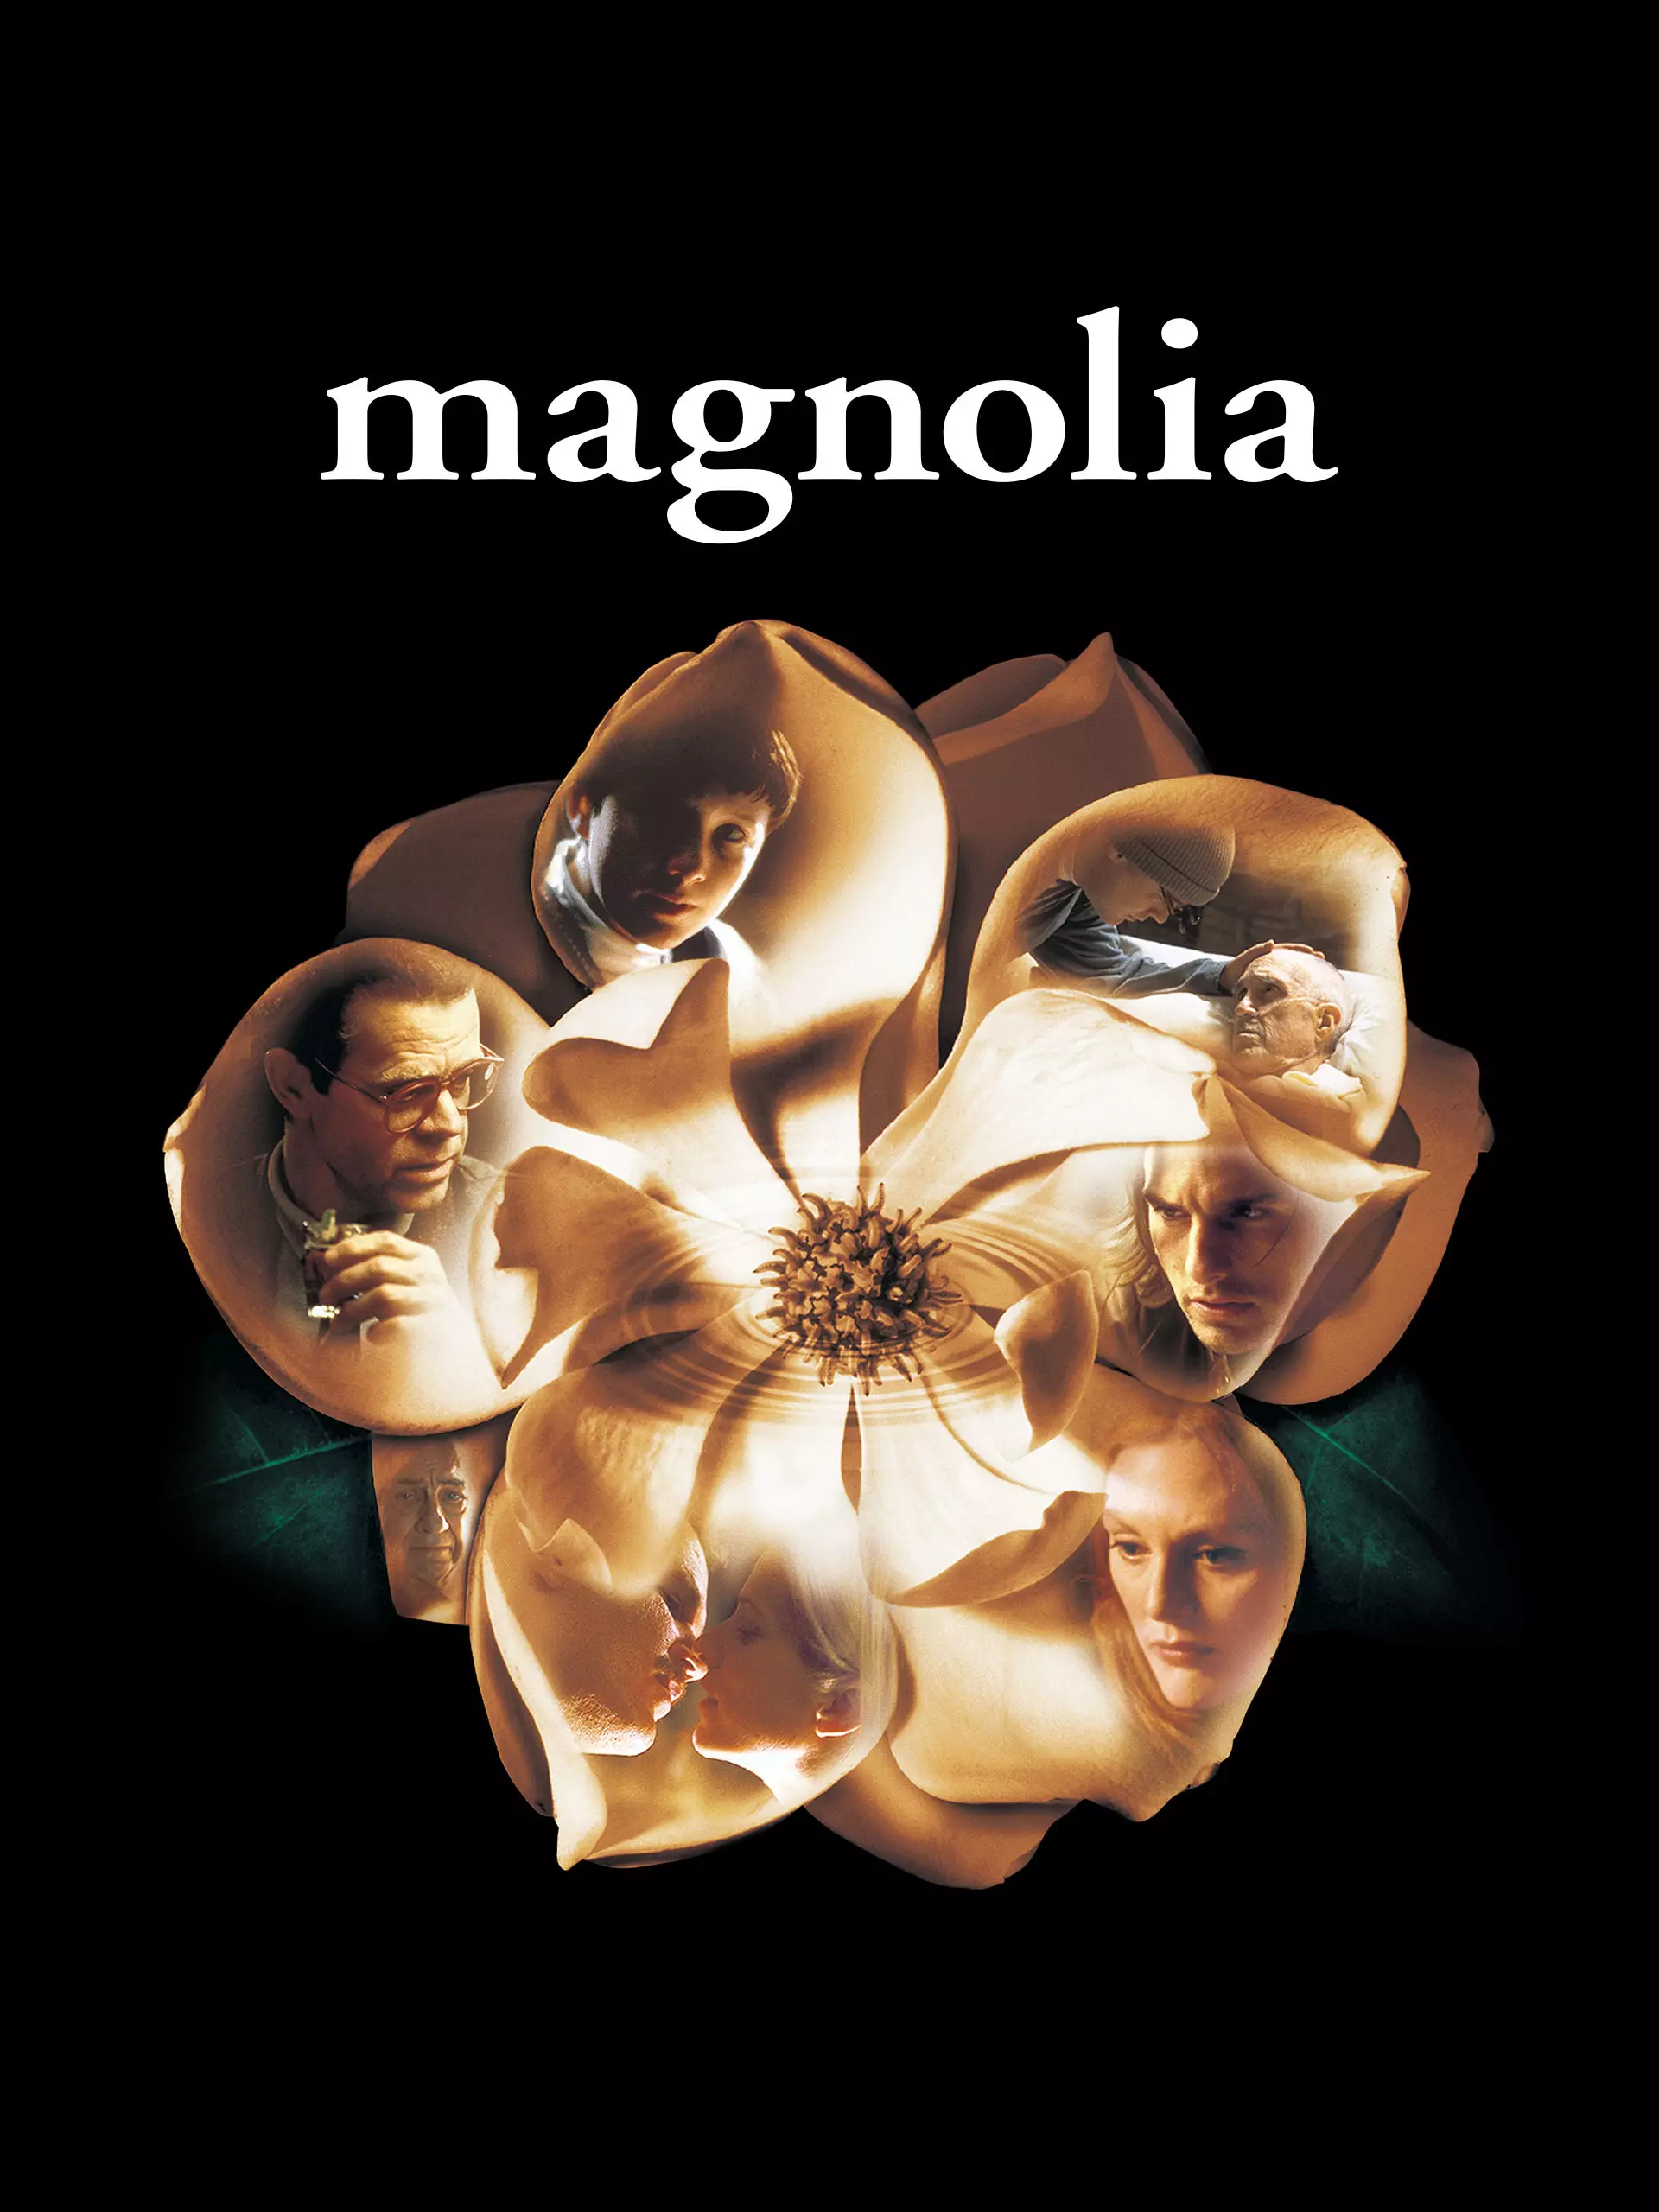 ดูหนัง Magnolia (1999) เทพบุตรแม็กโนเลีย เต็มเรื่อง